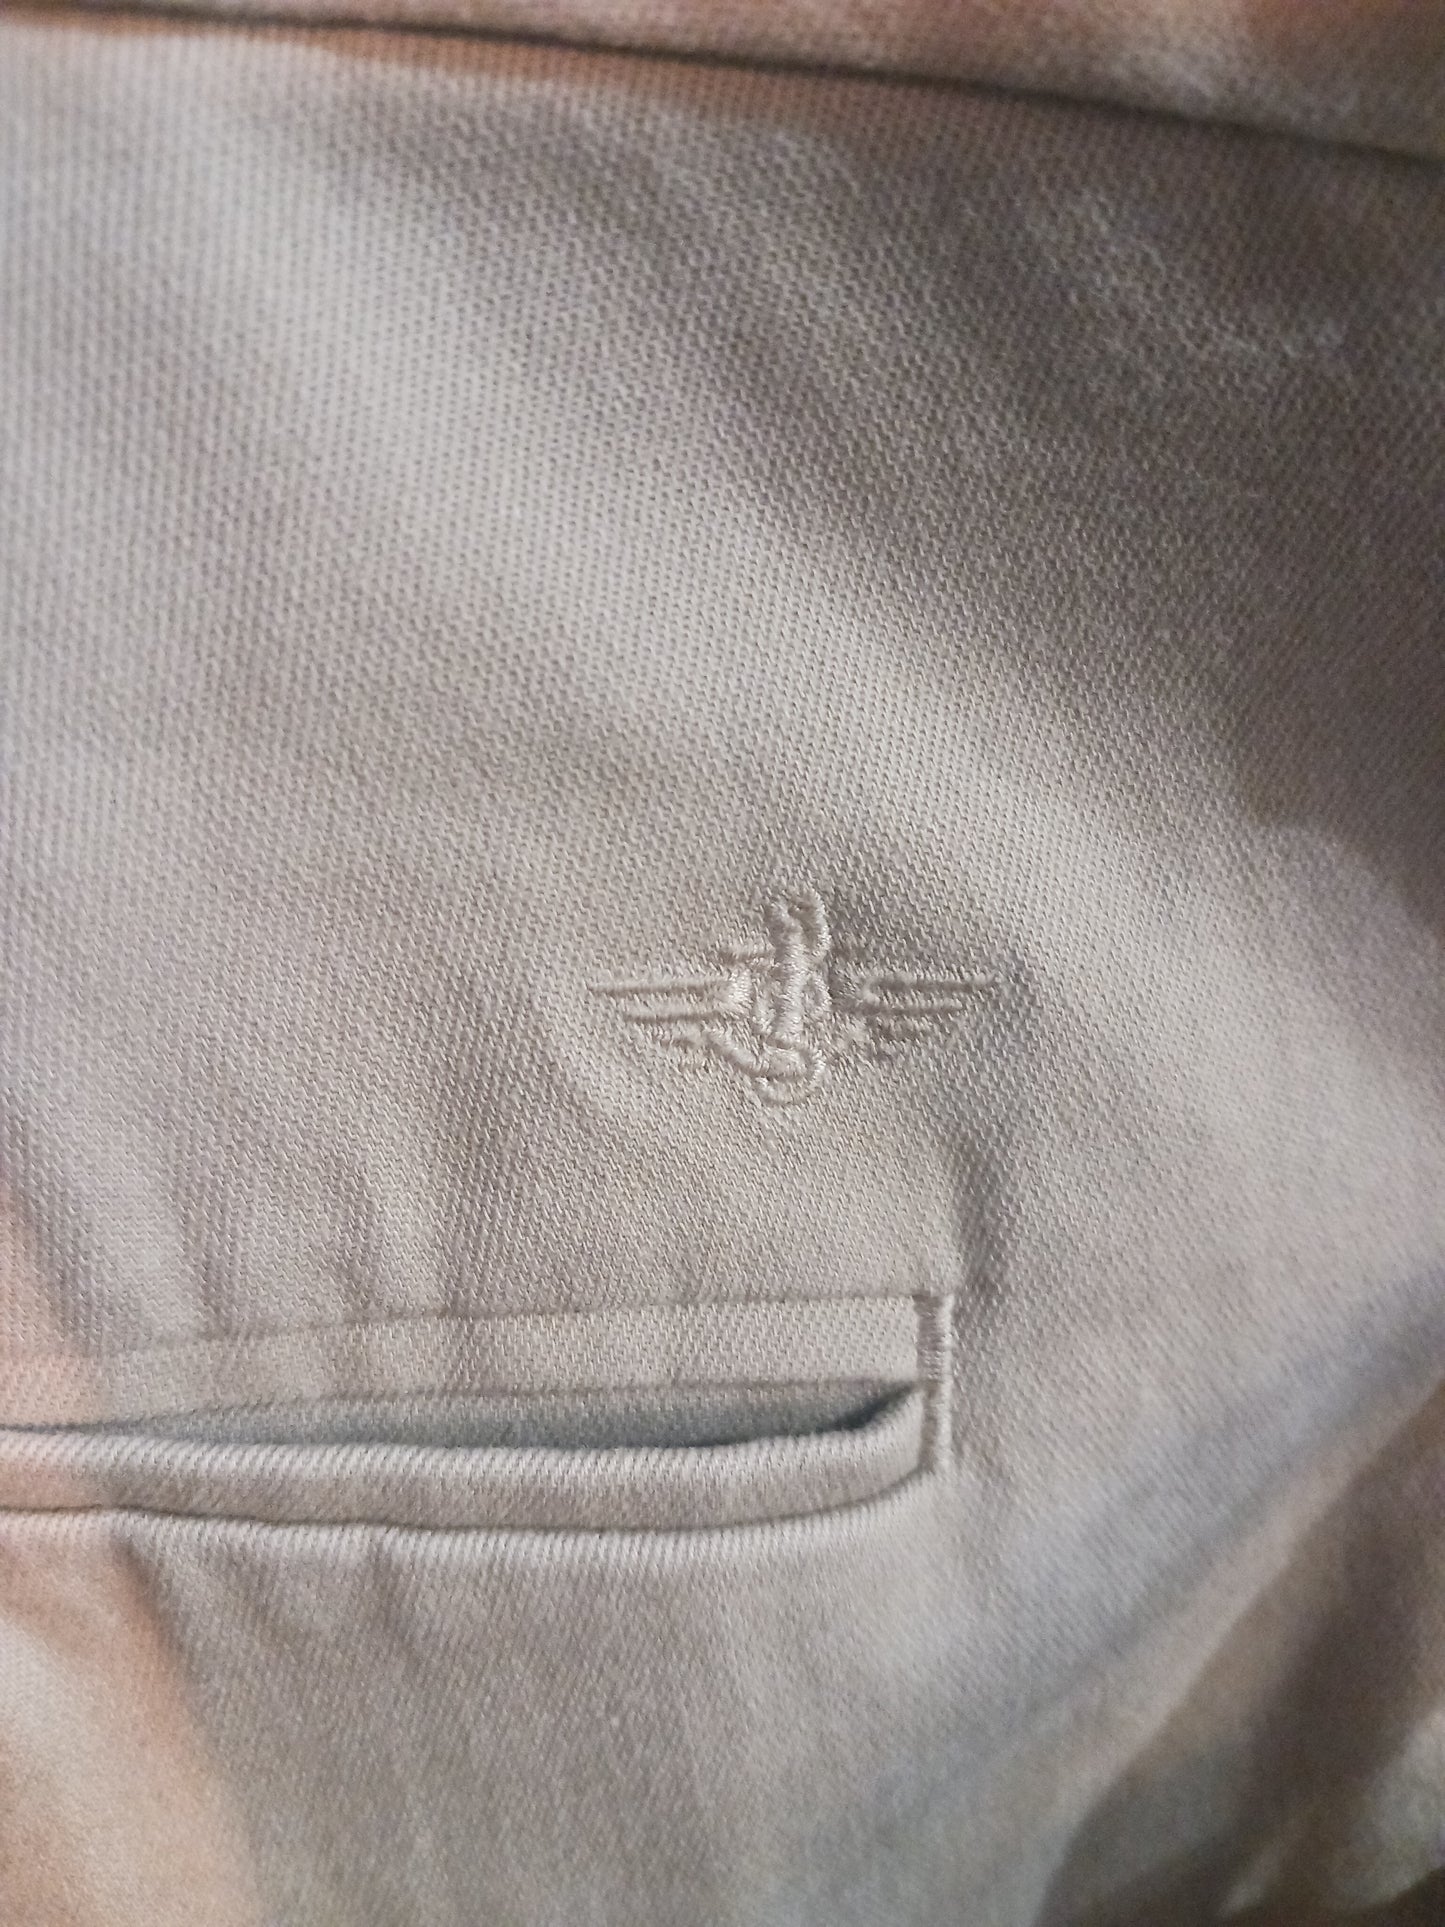 Dockers Classic Pleated Khaki Pants, Tan, Size 40×32